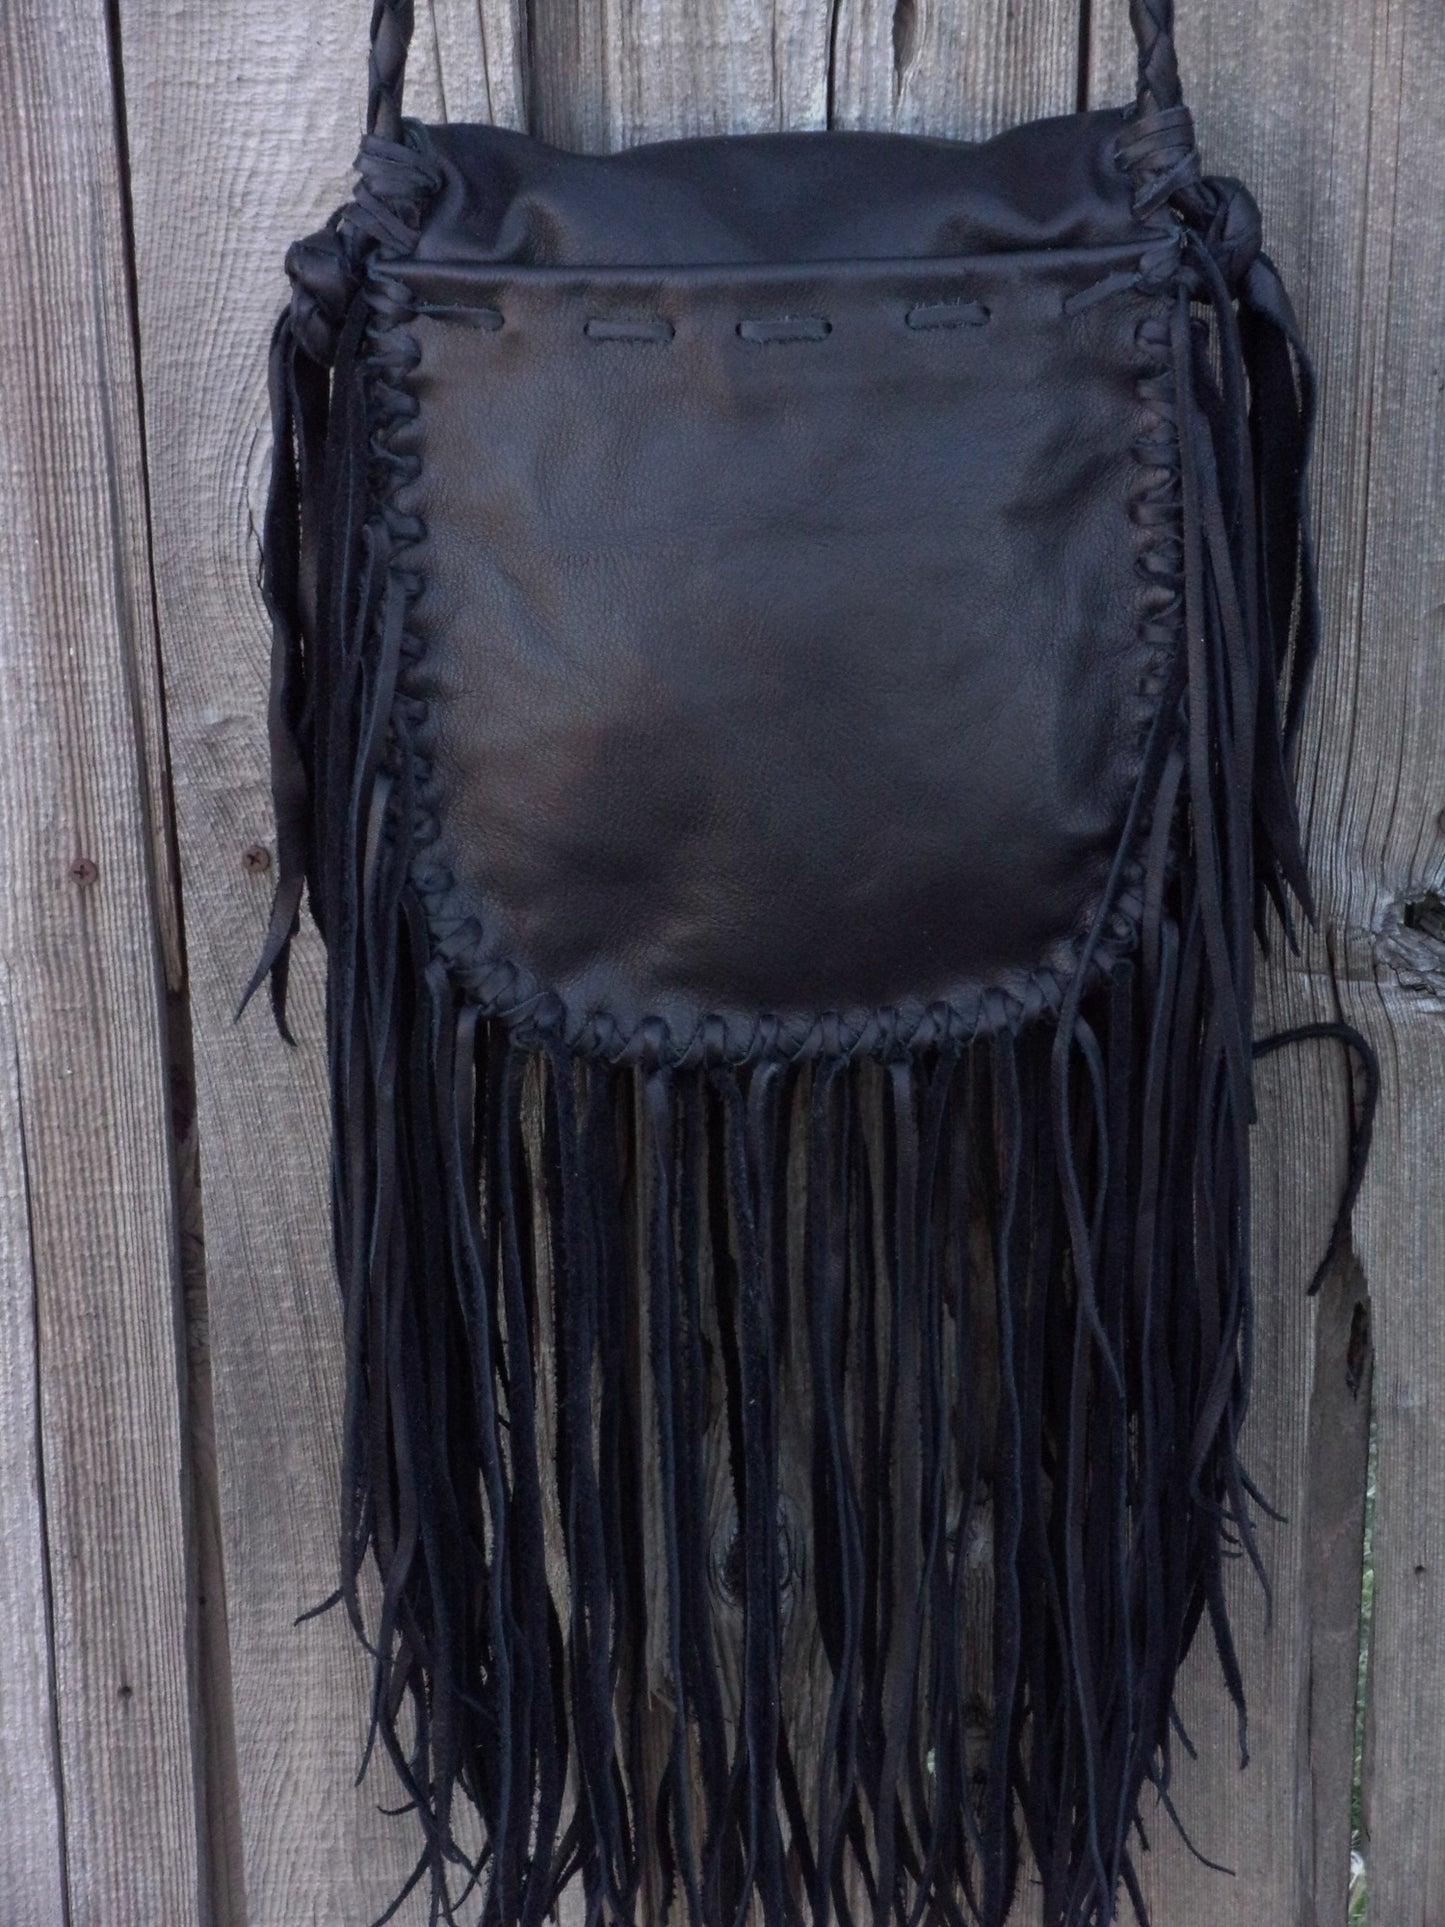 Black leather fringed handbag, bohemian style